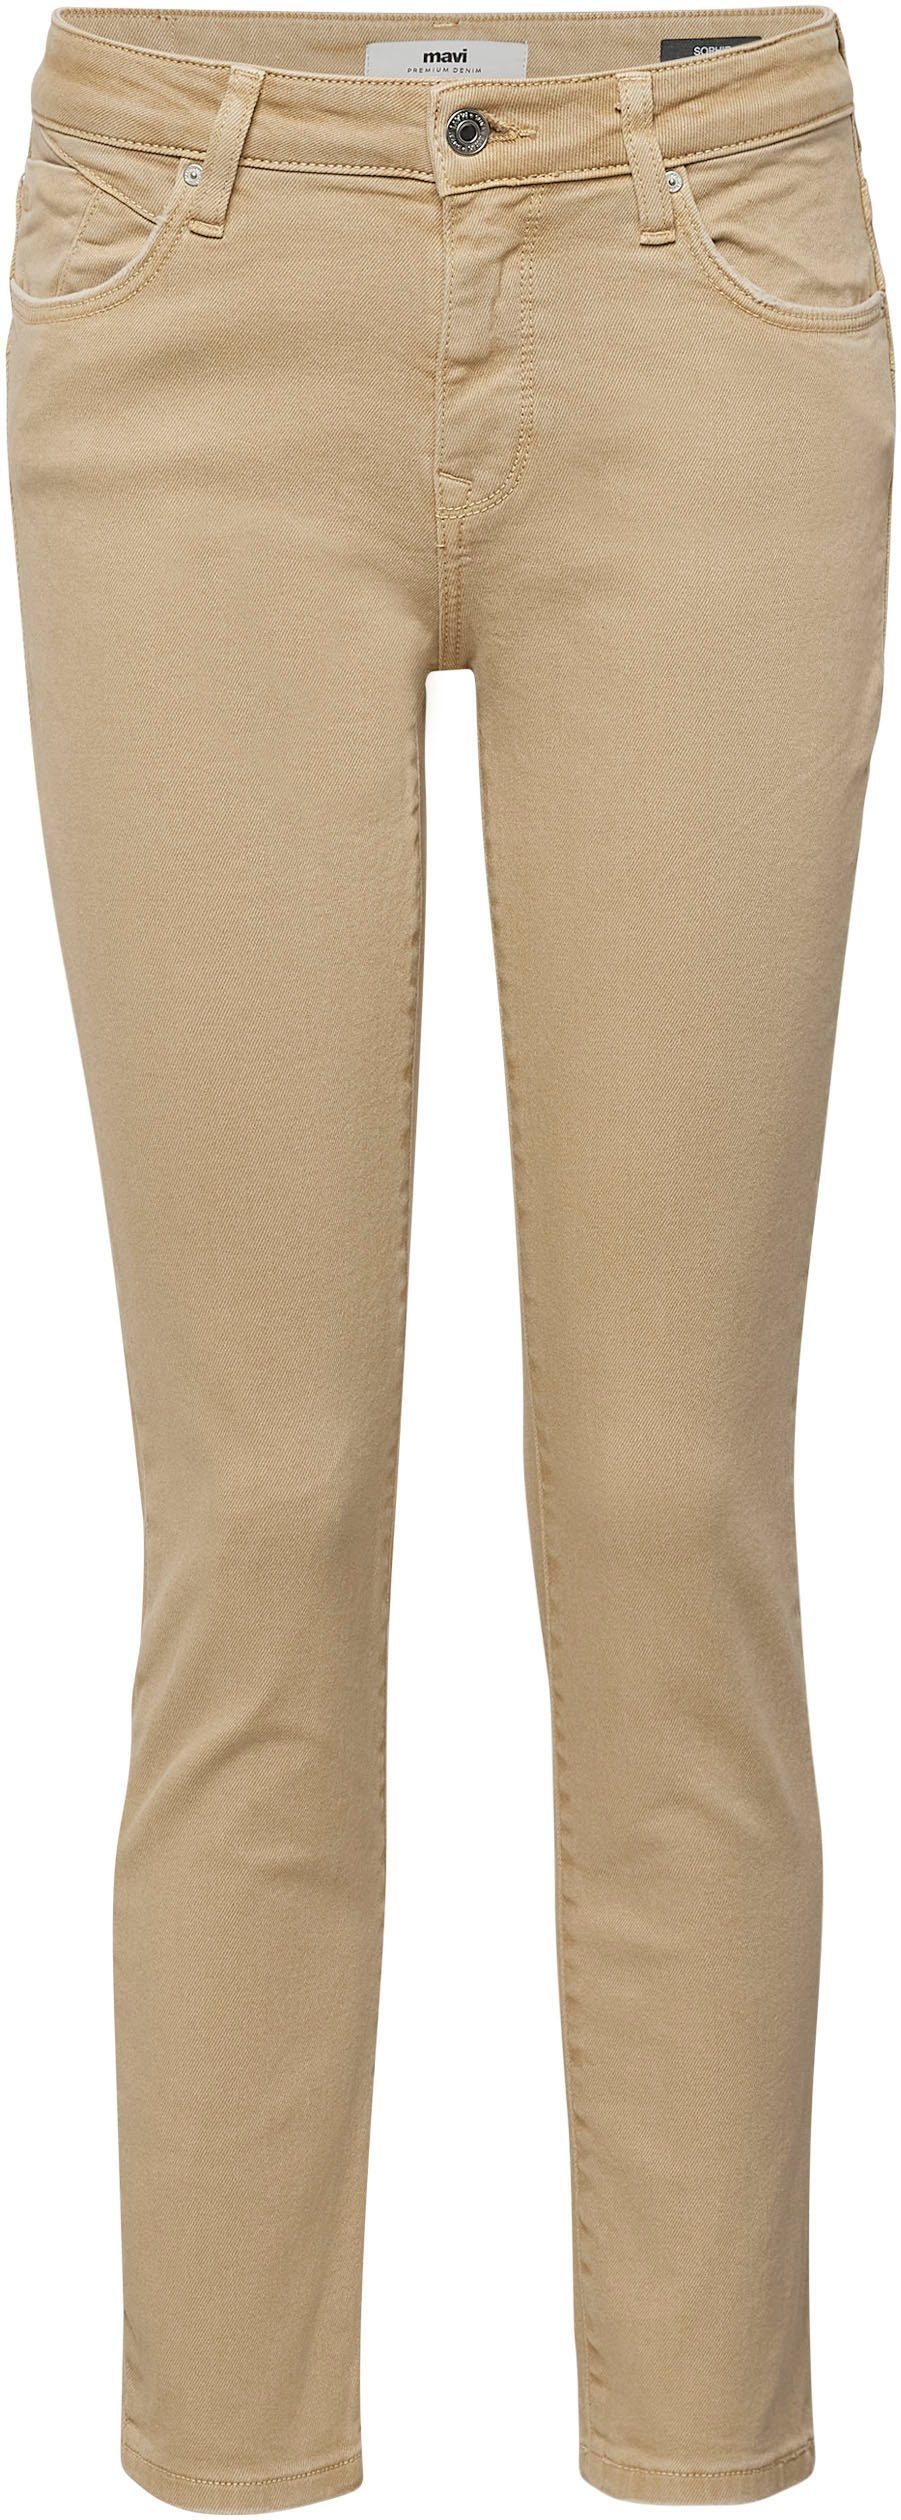 dank Slim-fit-Jeans hochwertiger camel Stretchdenim trageangenehmer (beige) Verarbeitung Mavi